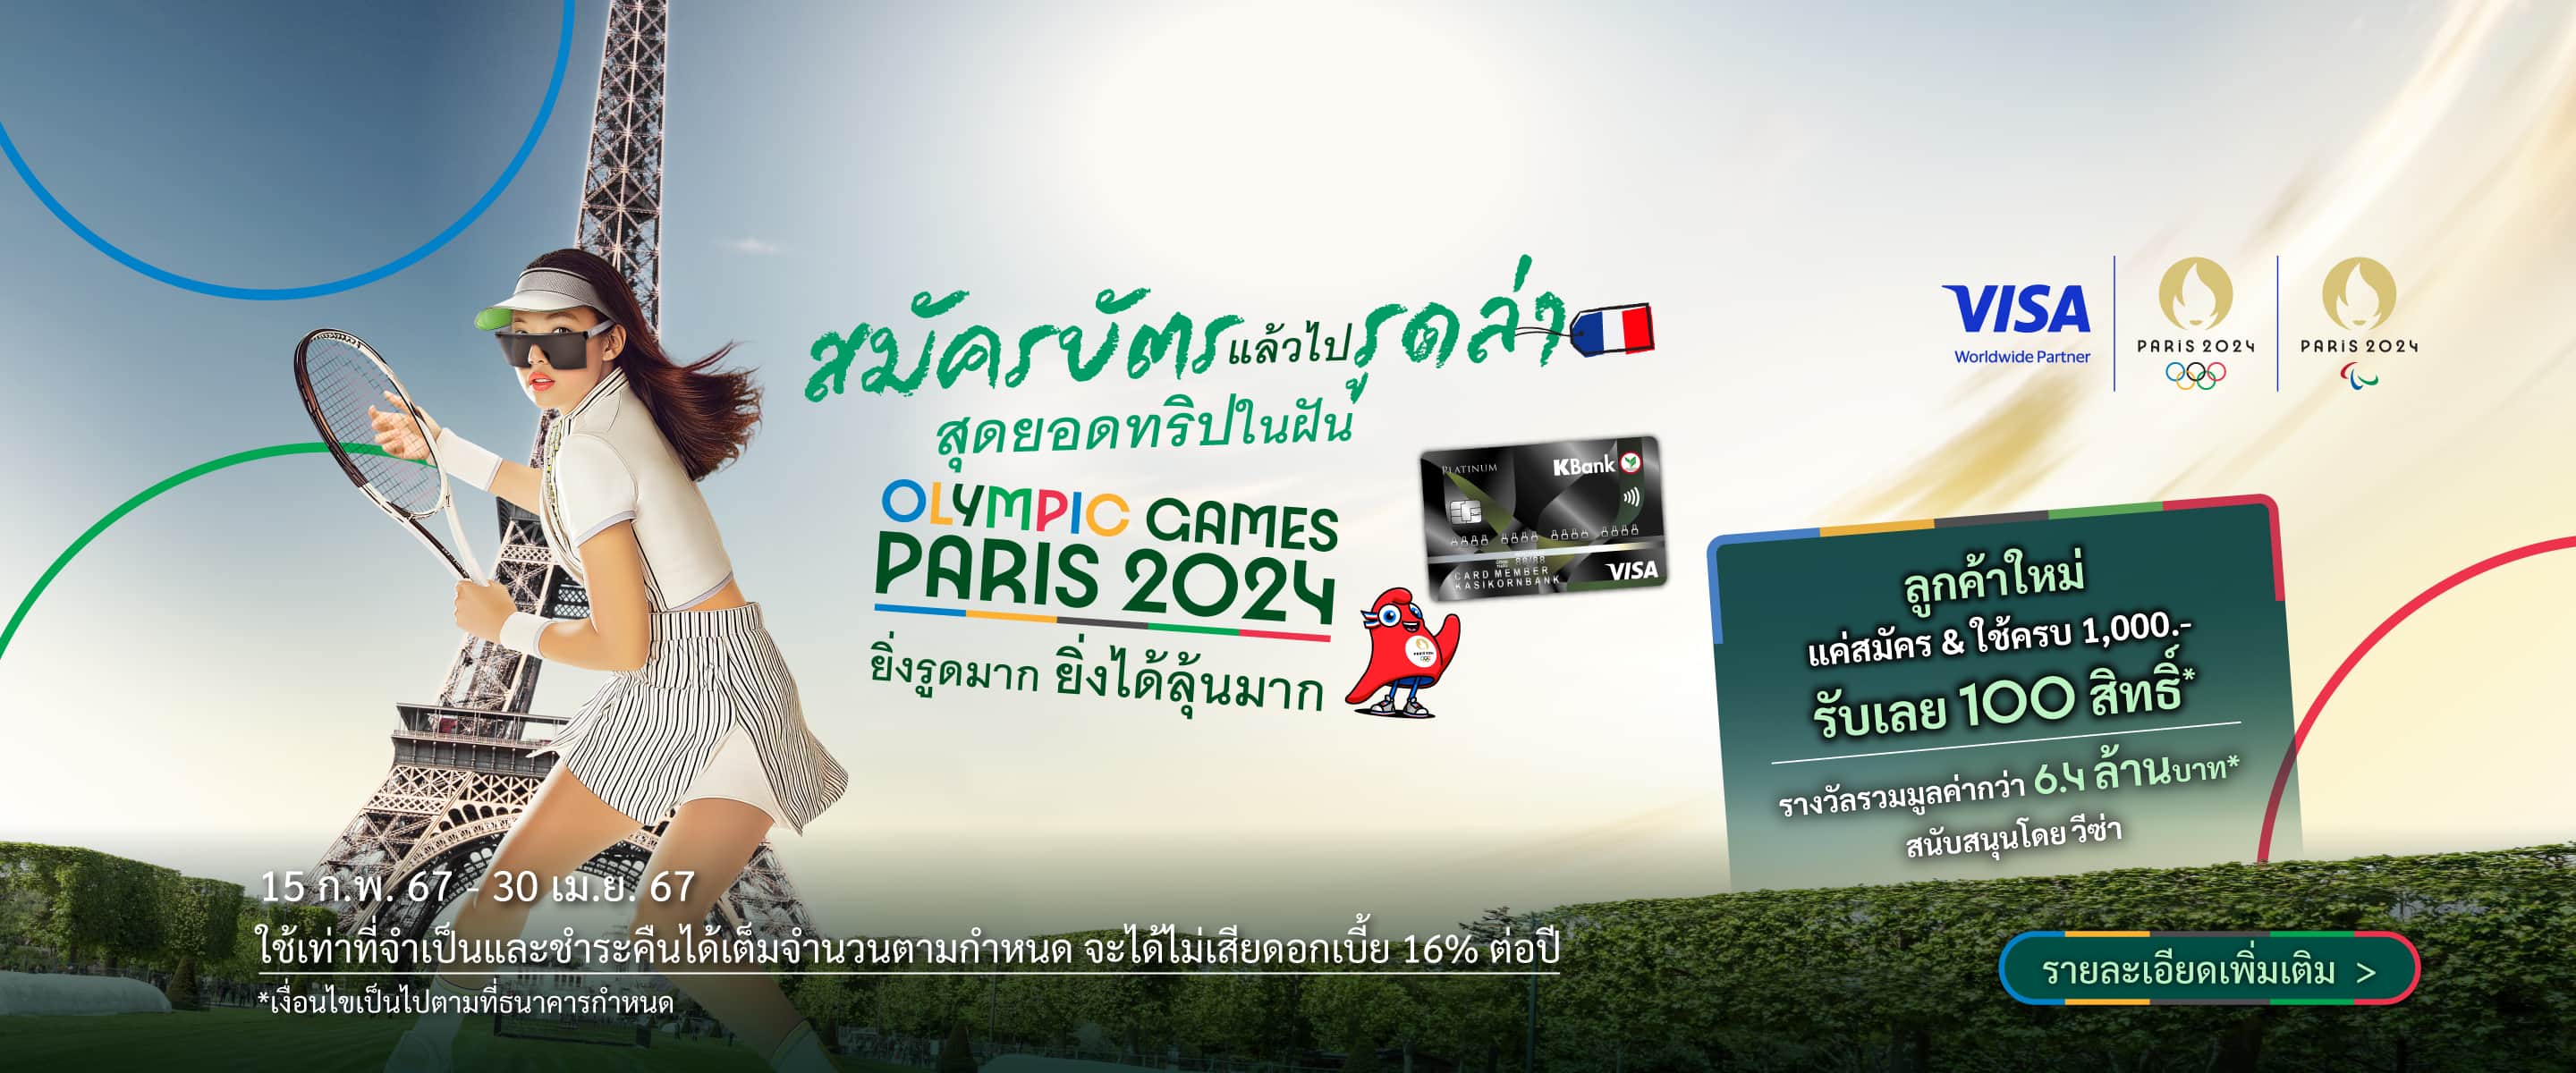 สมัครบัตรเครดิตวีซ่ากสิกรไทย ร่วมลุ้นเป็นส่วนหนึ่งของมหกรรมกีฬาระดับโลก